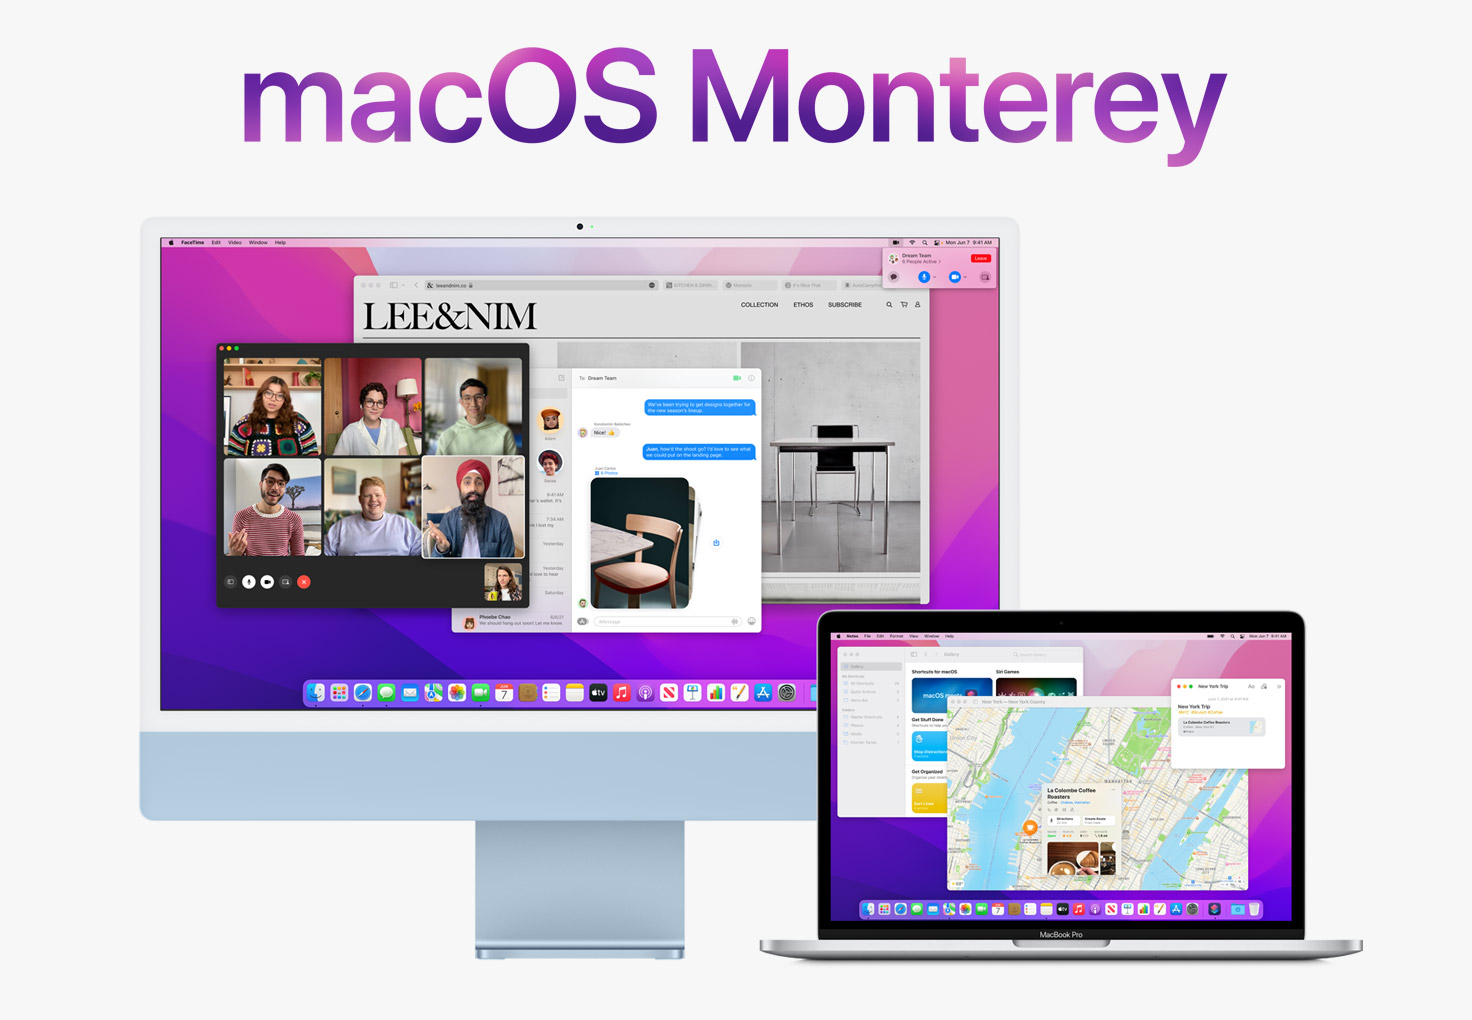 macOS Monterey